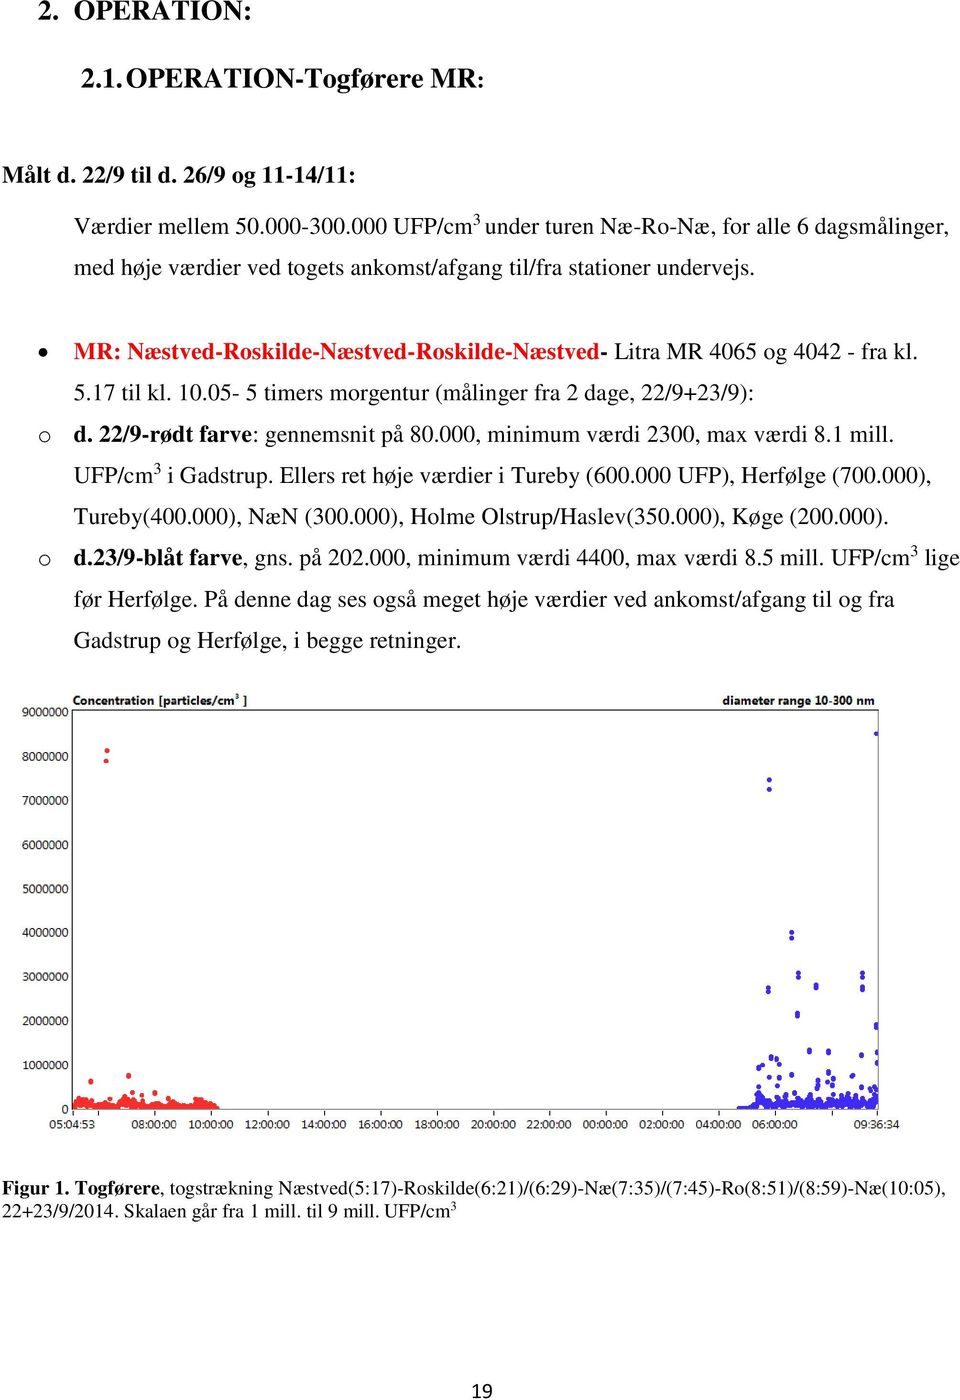 MR: Næstved-Roskilde-Næstved-Roskilde-Næstved- Litra MR 4065 og 4042 - fra kl. 5.17 til kl. 10.05-5 timers morgentur (målinger fra 2 dage, 22/9+23/9): o d. 22/9-rødt farve: gennemsnit på 80.